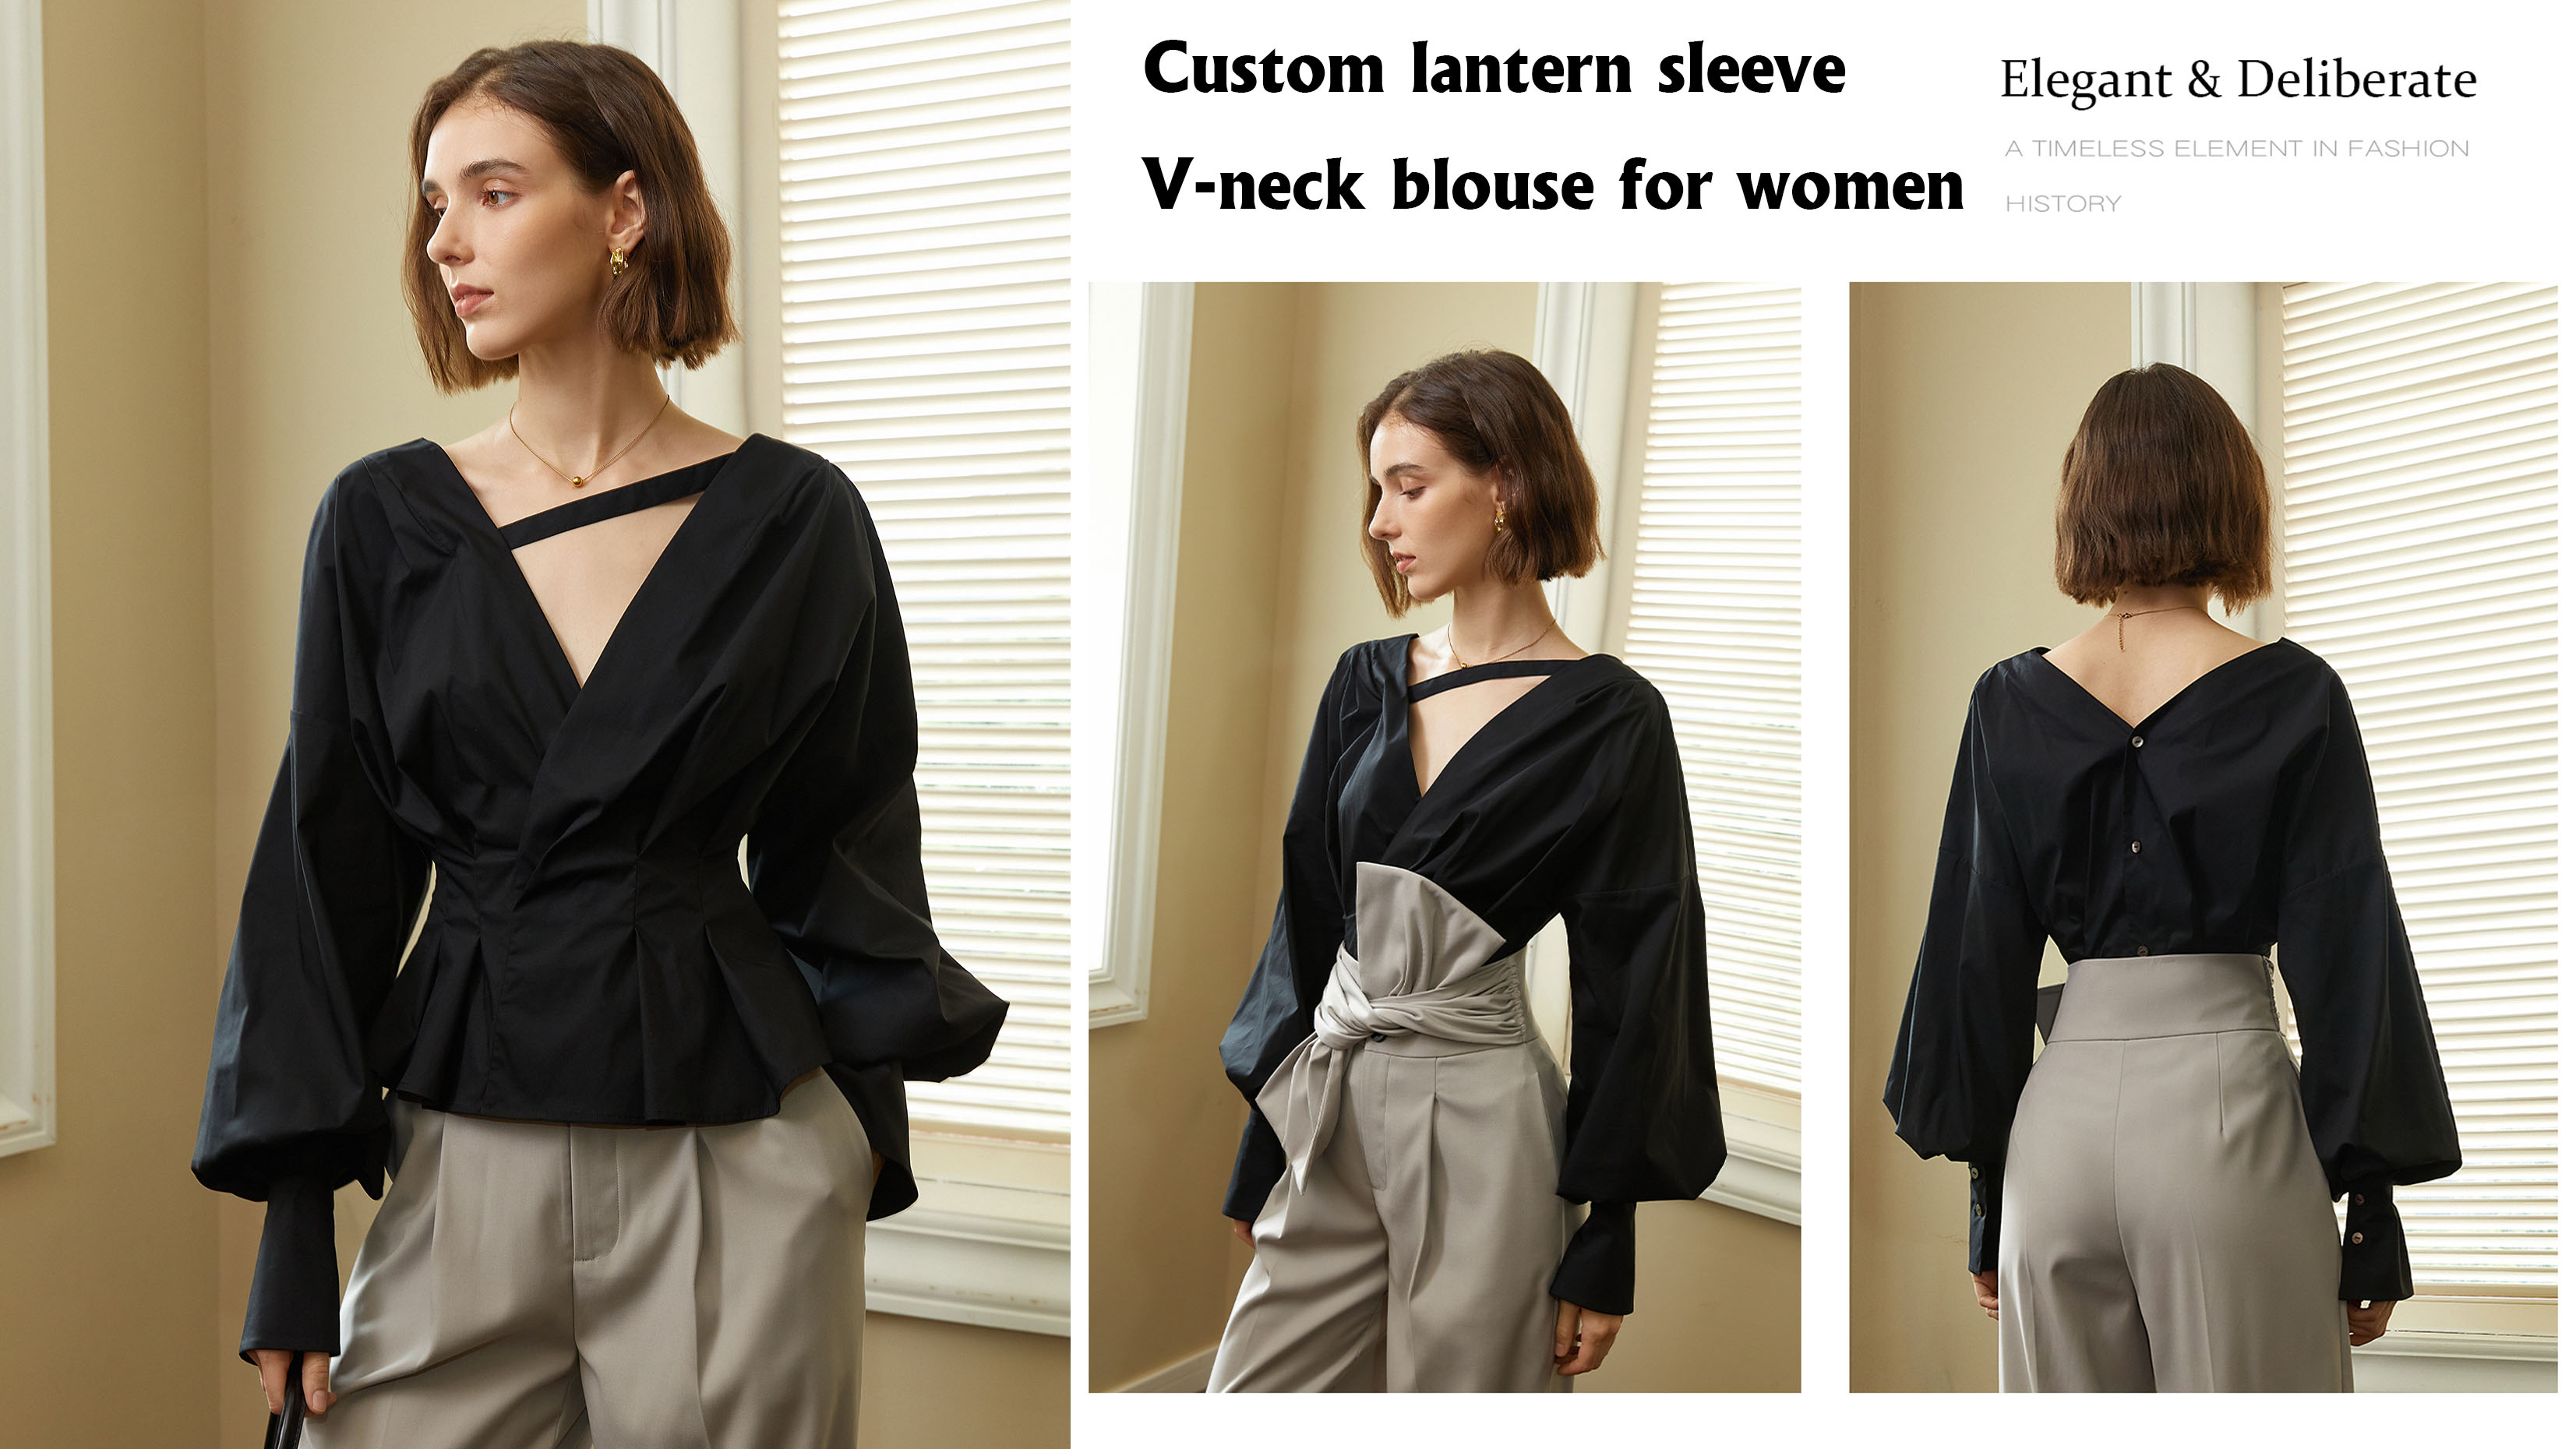 Custom lantern sleeve V-neck blouse for women